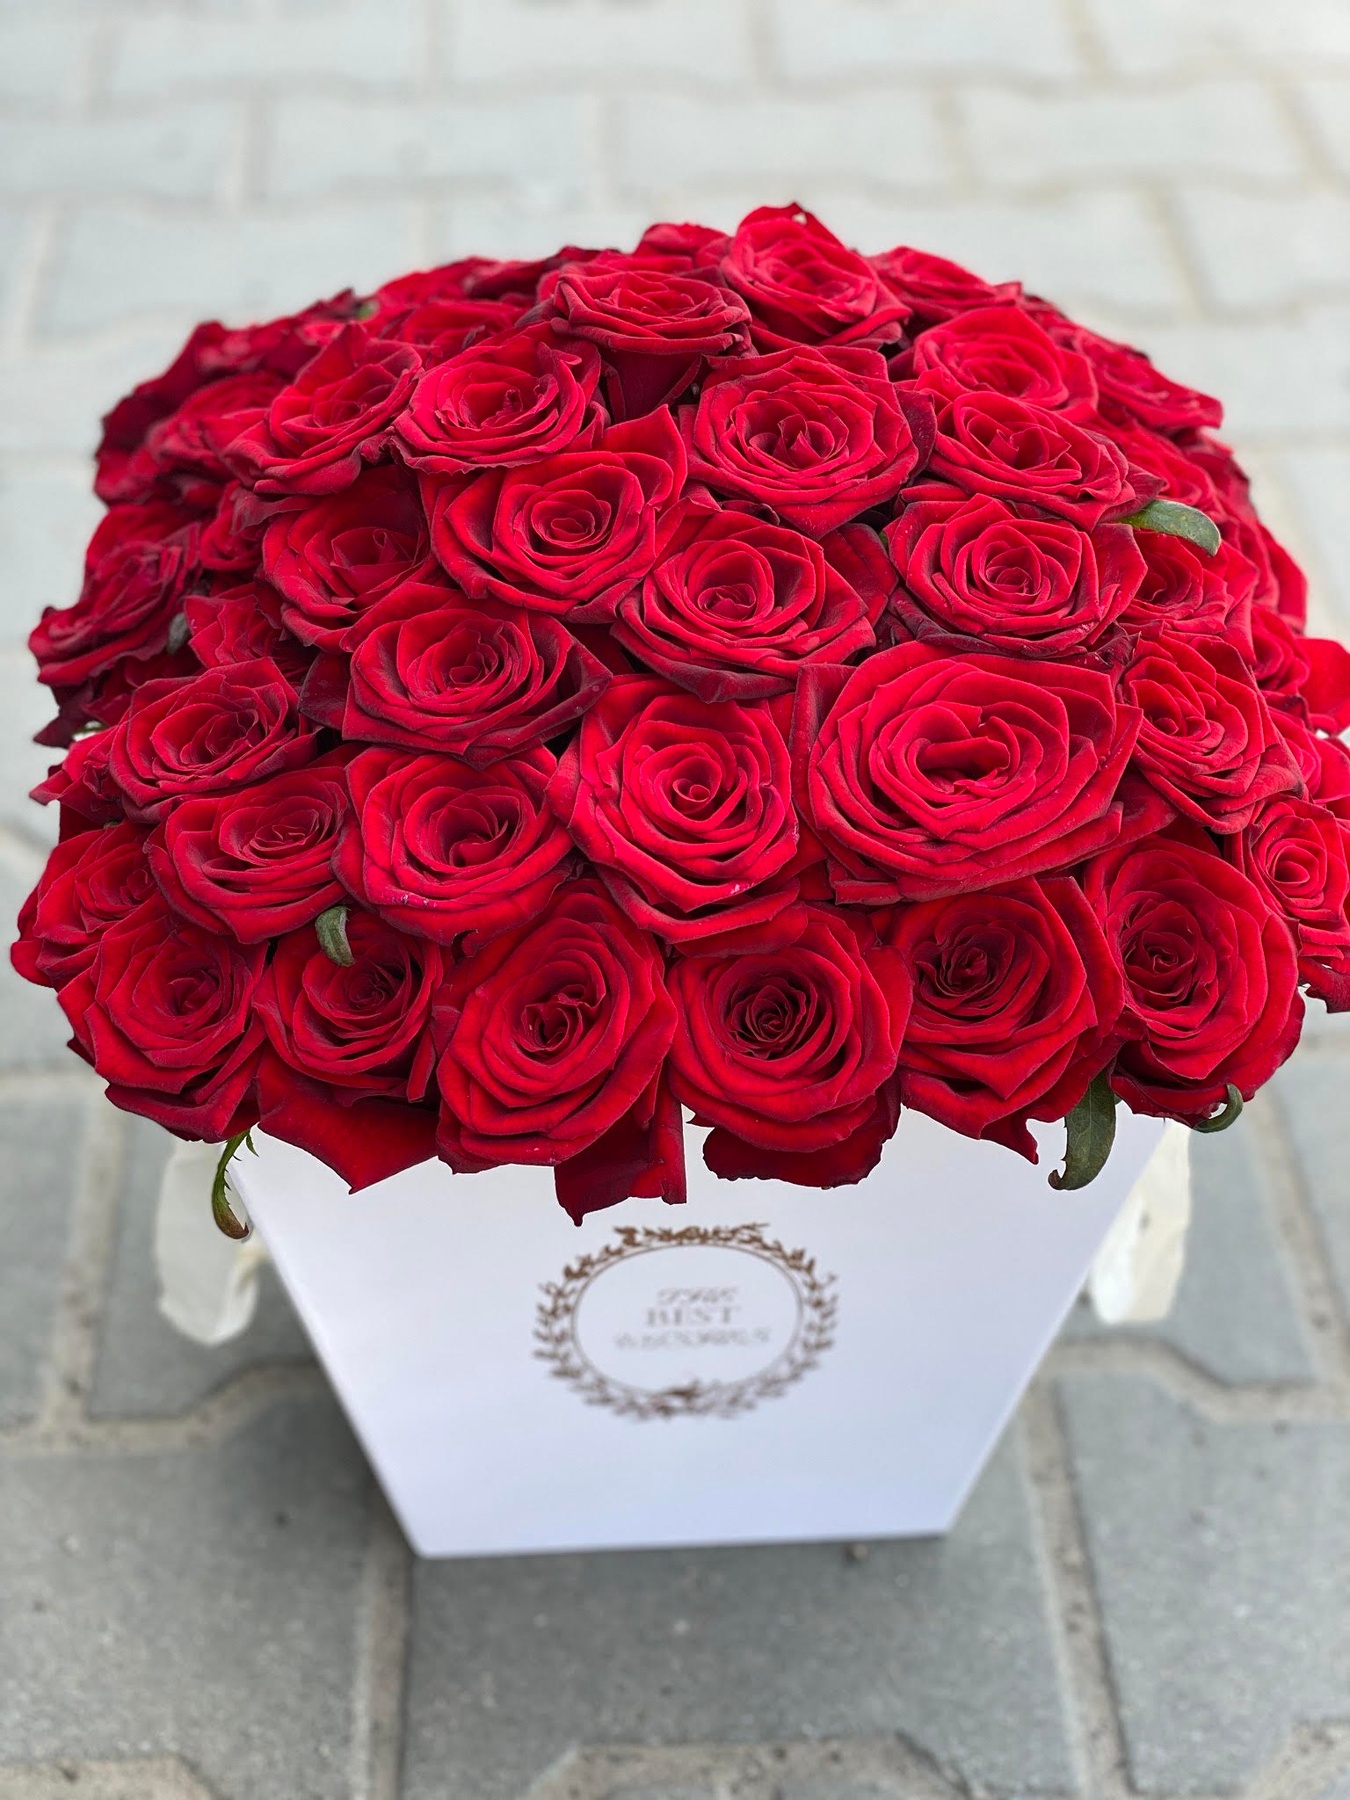 Червоні троянди в трапецієподібній коробці